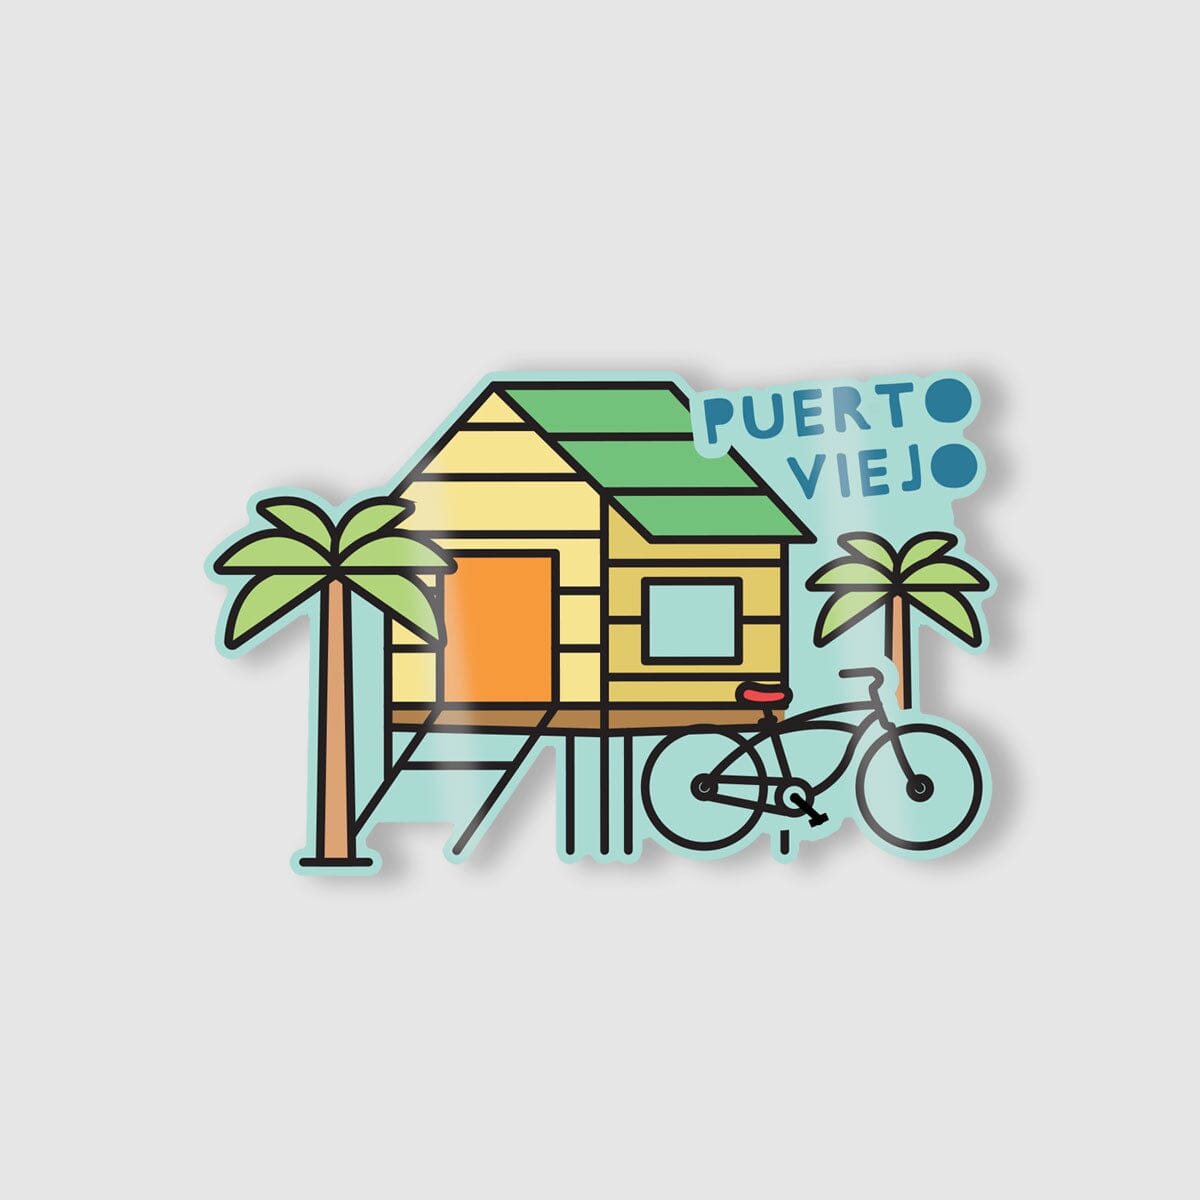 Stickers Individuales La Fiebre de Viajar Puerto Viejo 